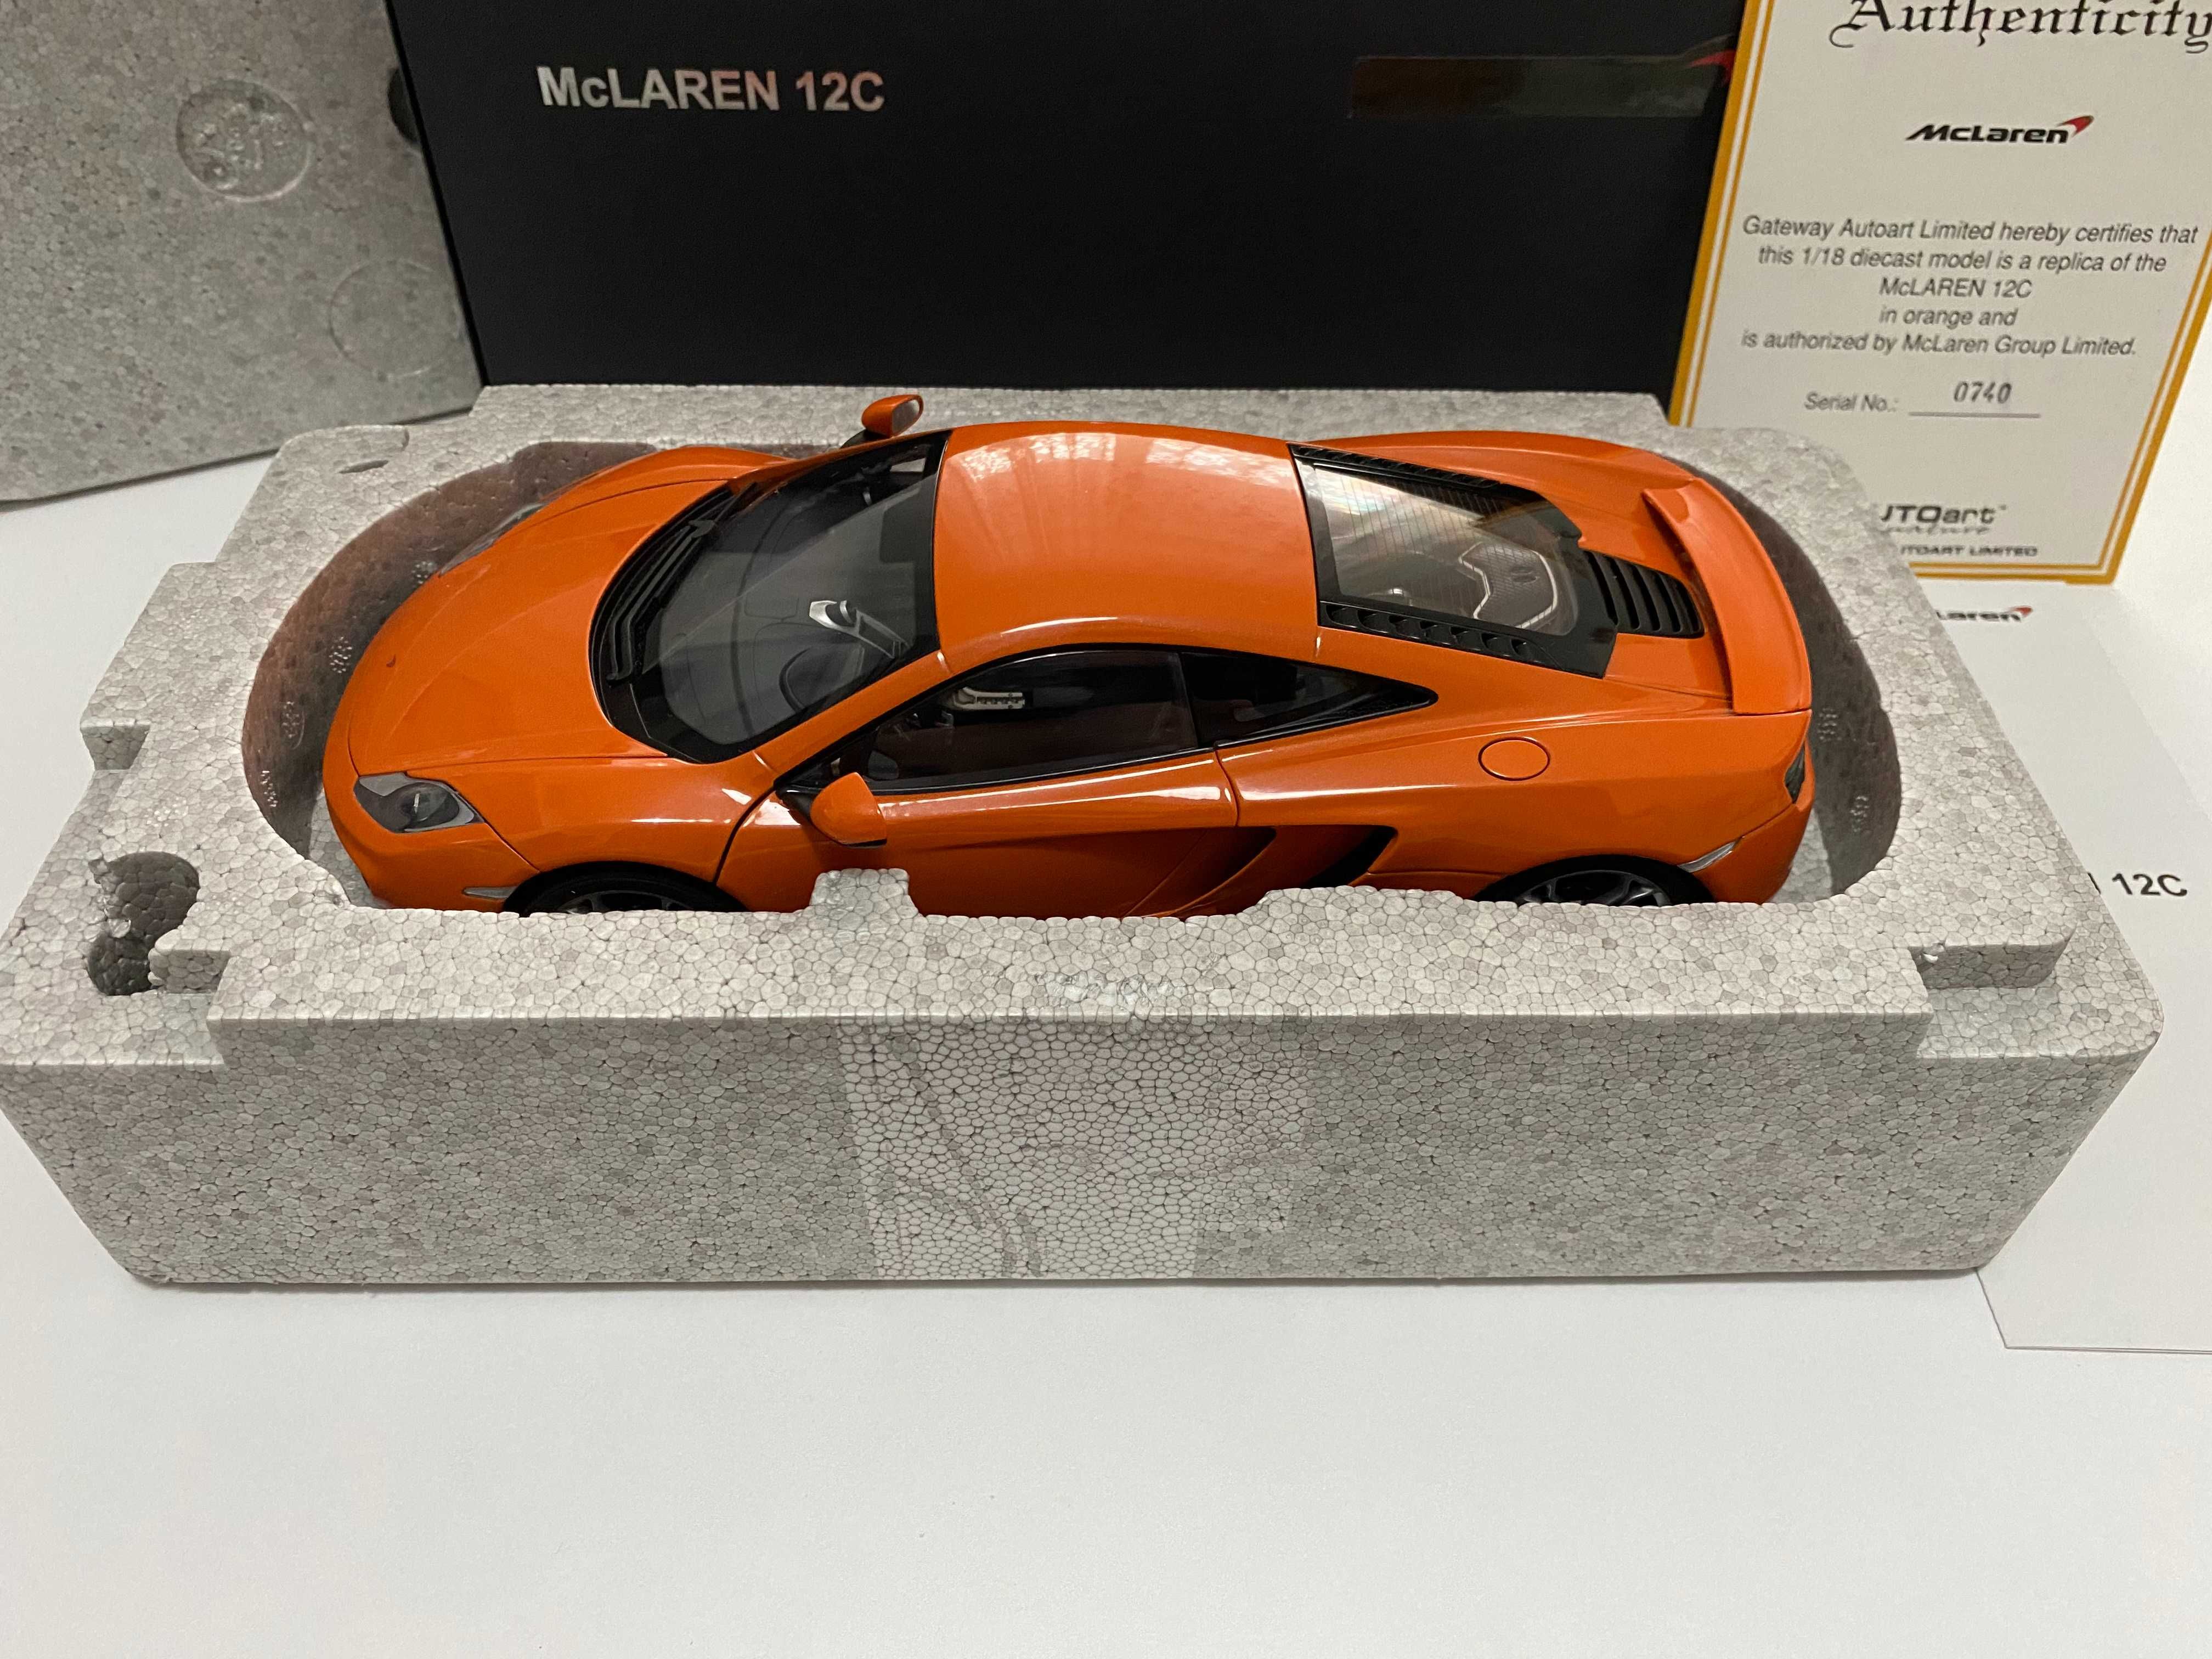 Macheta McLaren MP4-12C orange 1:18 AUTOart